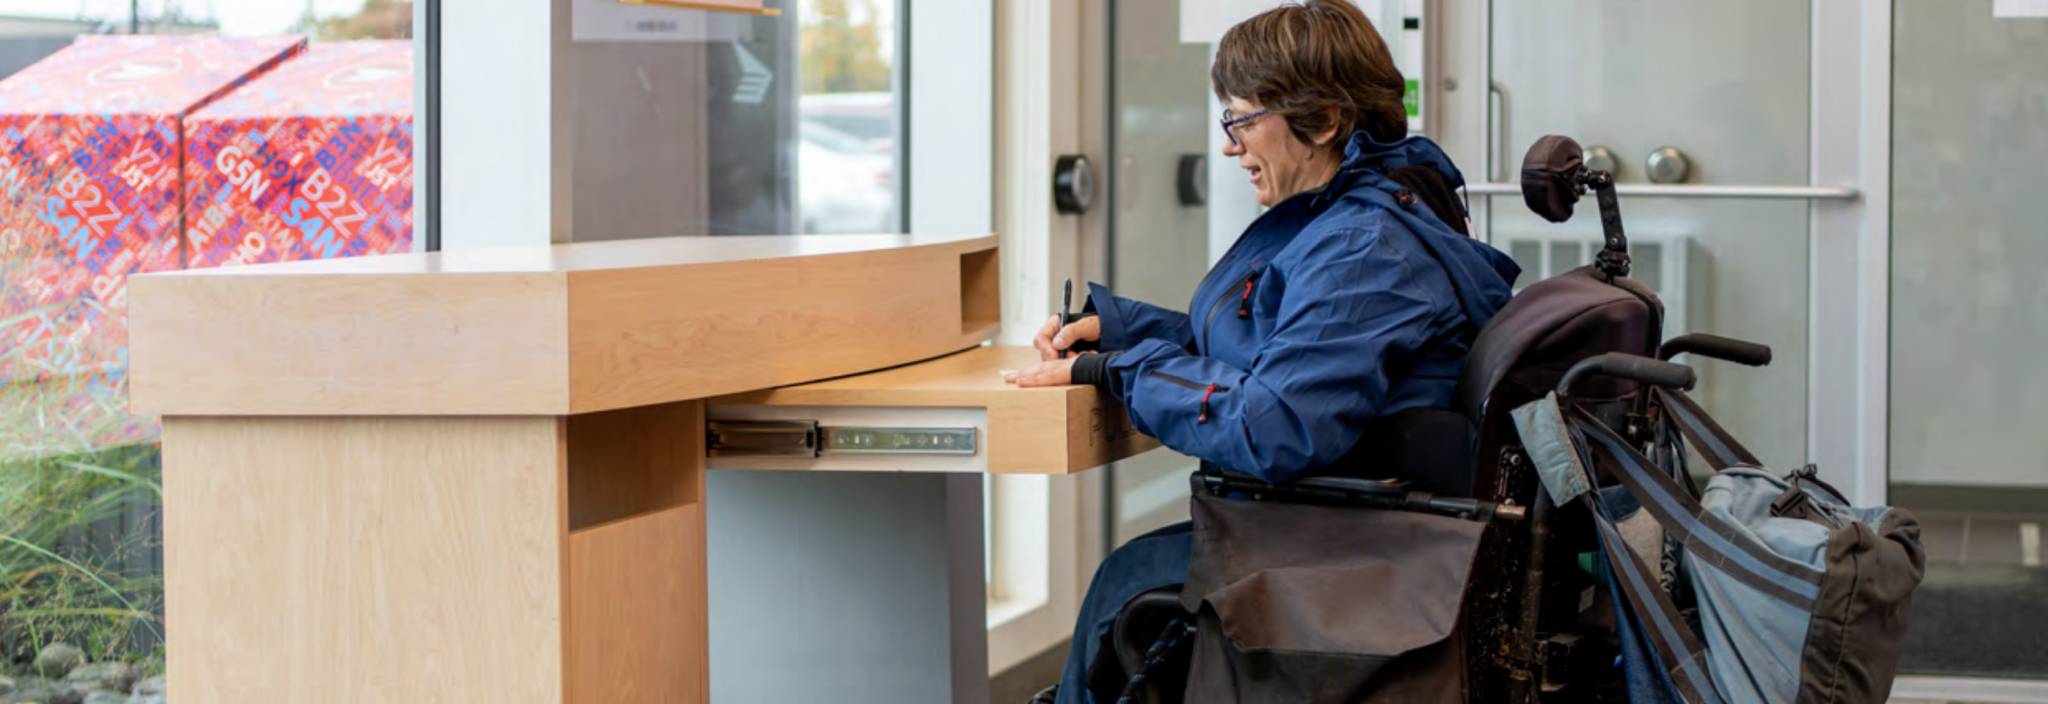 Une femme en fauteuil roulant remplit un formulaire à un bureau de poste accessible.